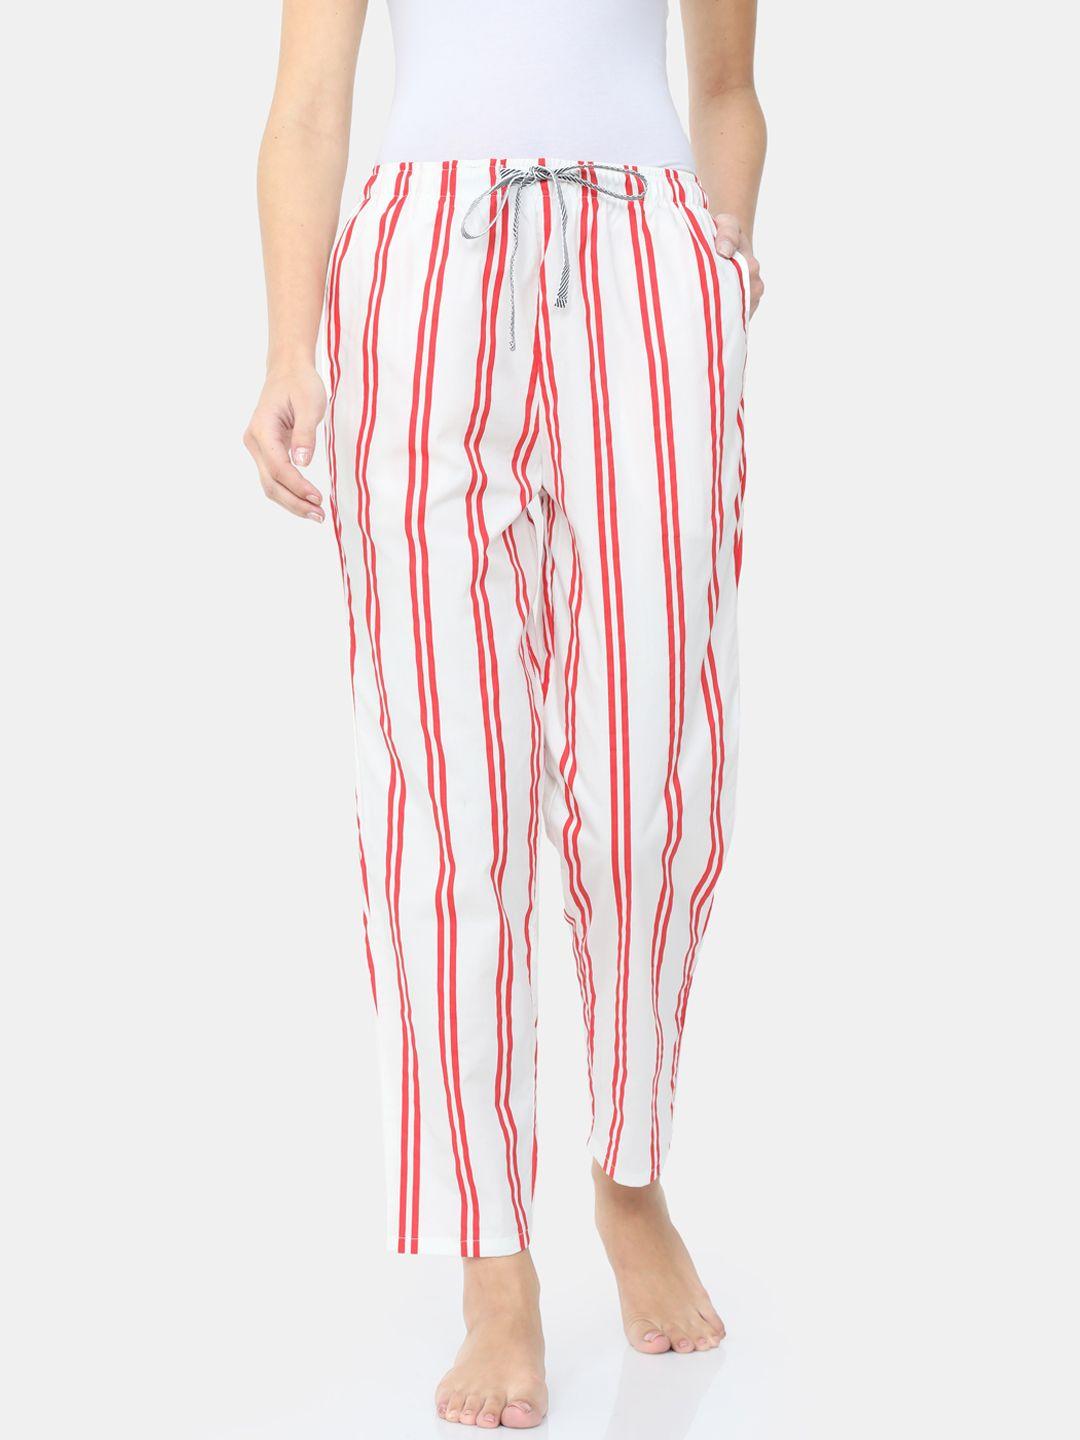 bareblow women white & red striped cotton lounge pants